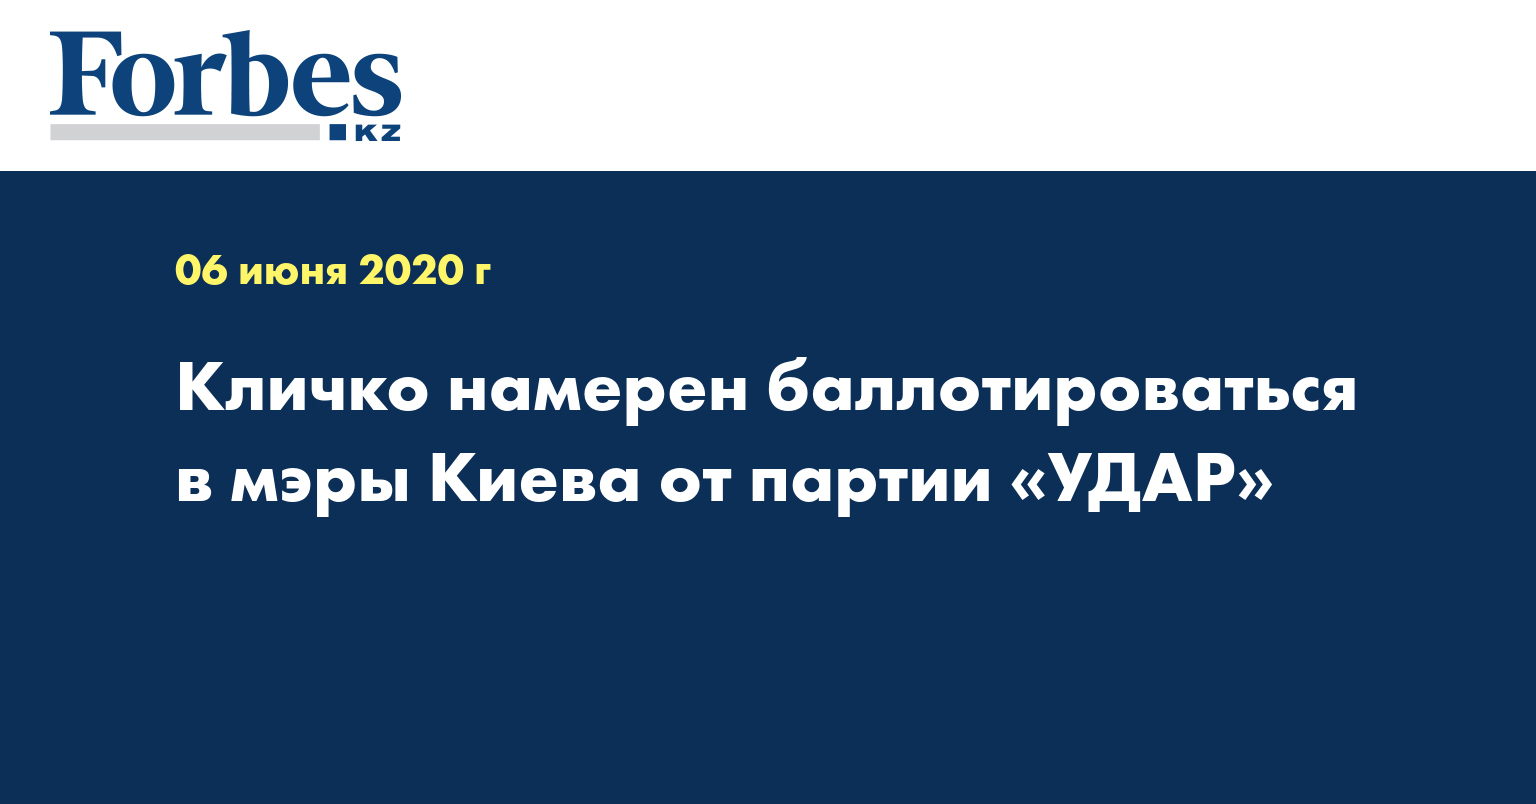 Кличко намерен баллотироваться в мэры Киева от партии «УДАР»